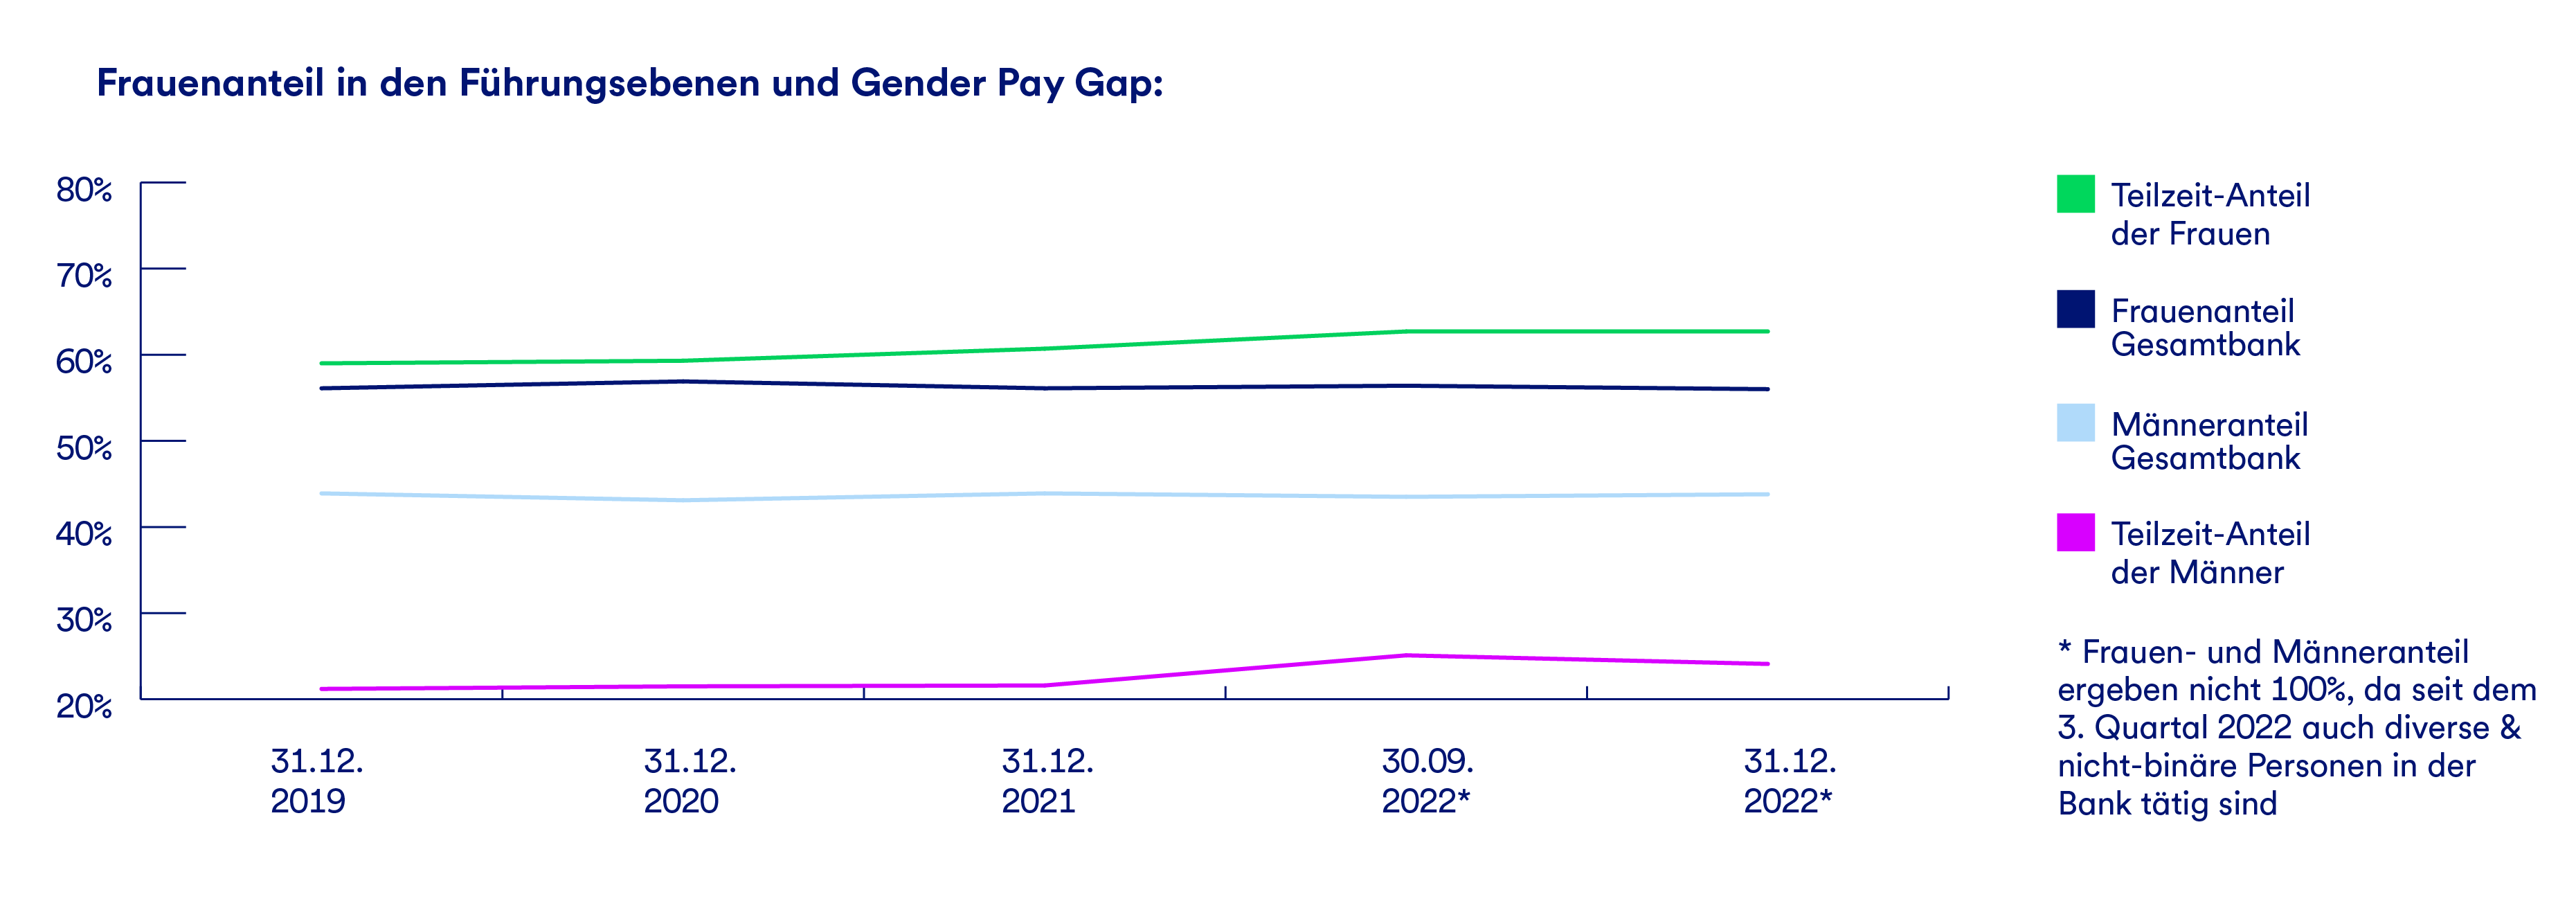 Ein Graph der den Frauenanteil und Gender-Pay-Gap in den Führungsebenen darstellt.